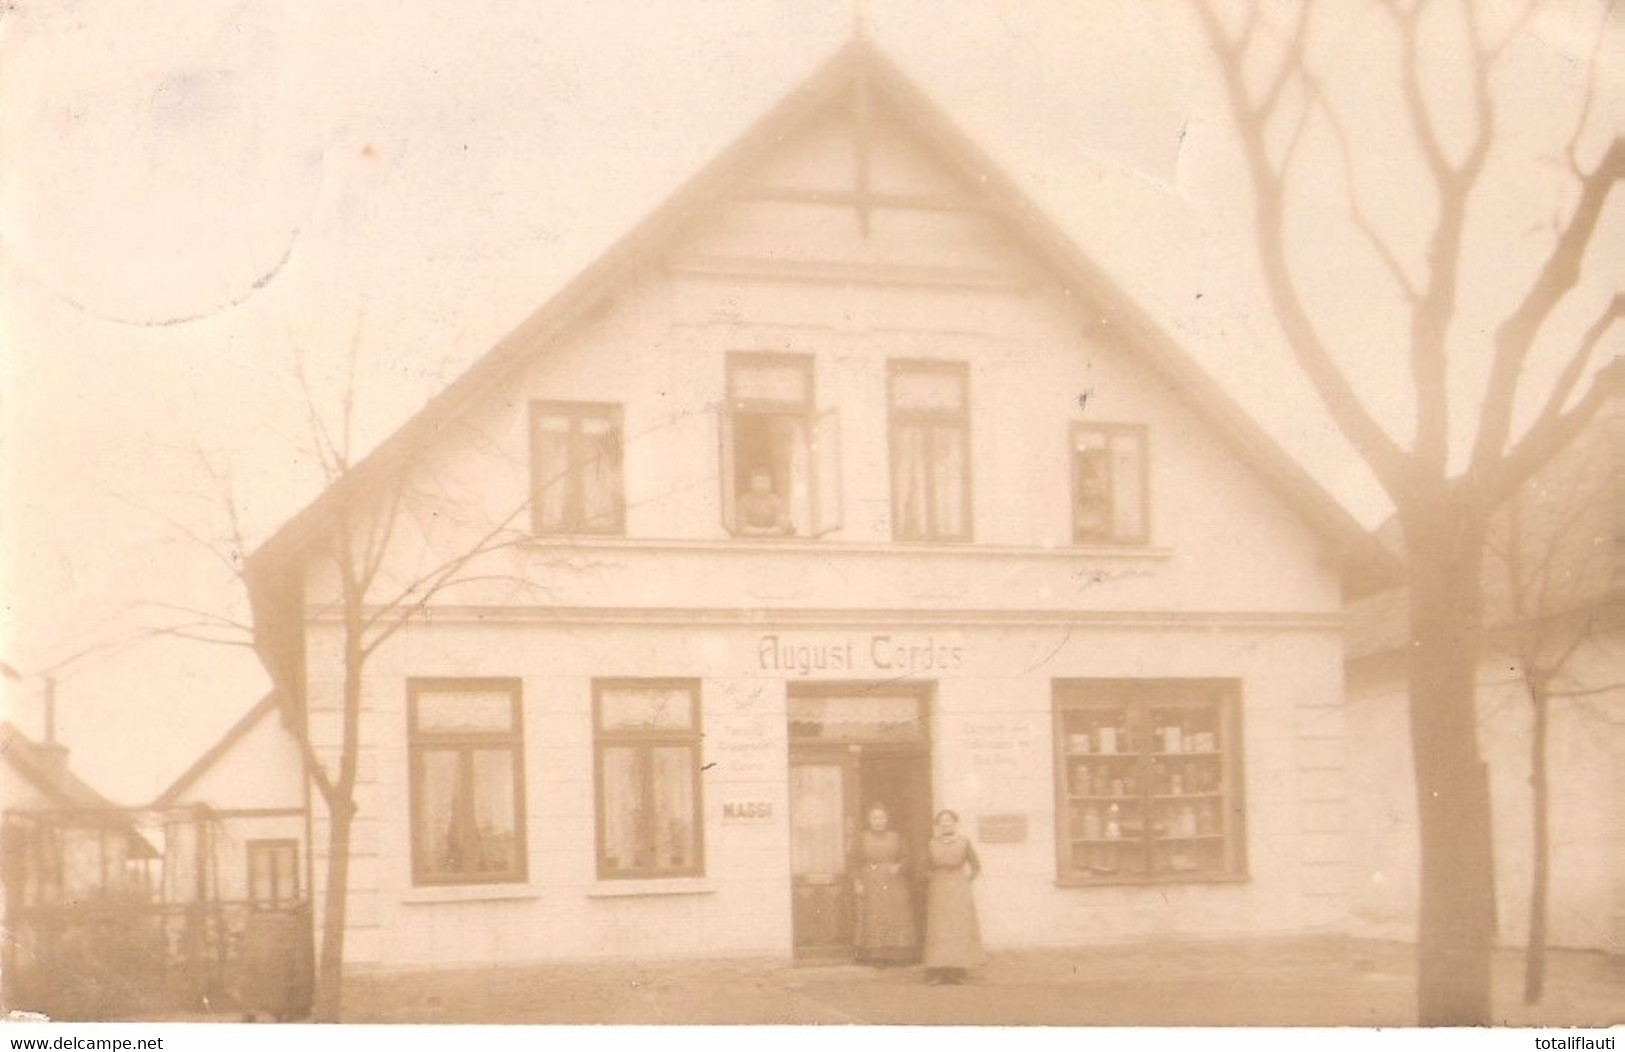 DELMENHORST Niedersachsen Geschäft August Cordes Original Private Fotokarte Gelaufen 8.12.1913 - Delmenhorst